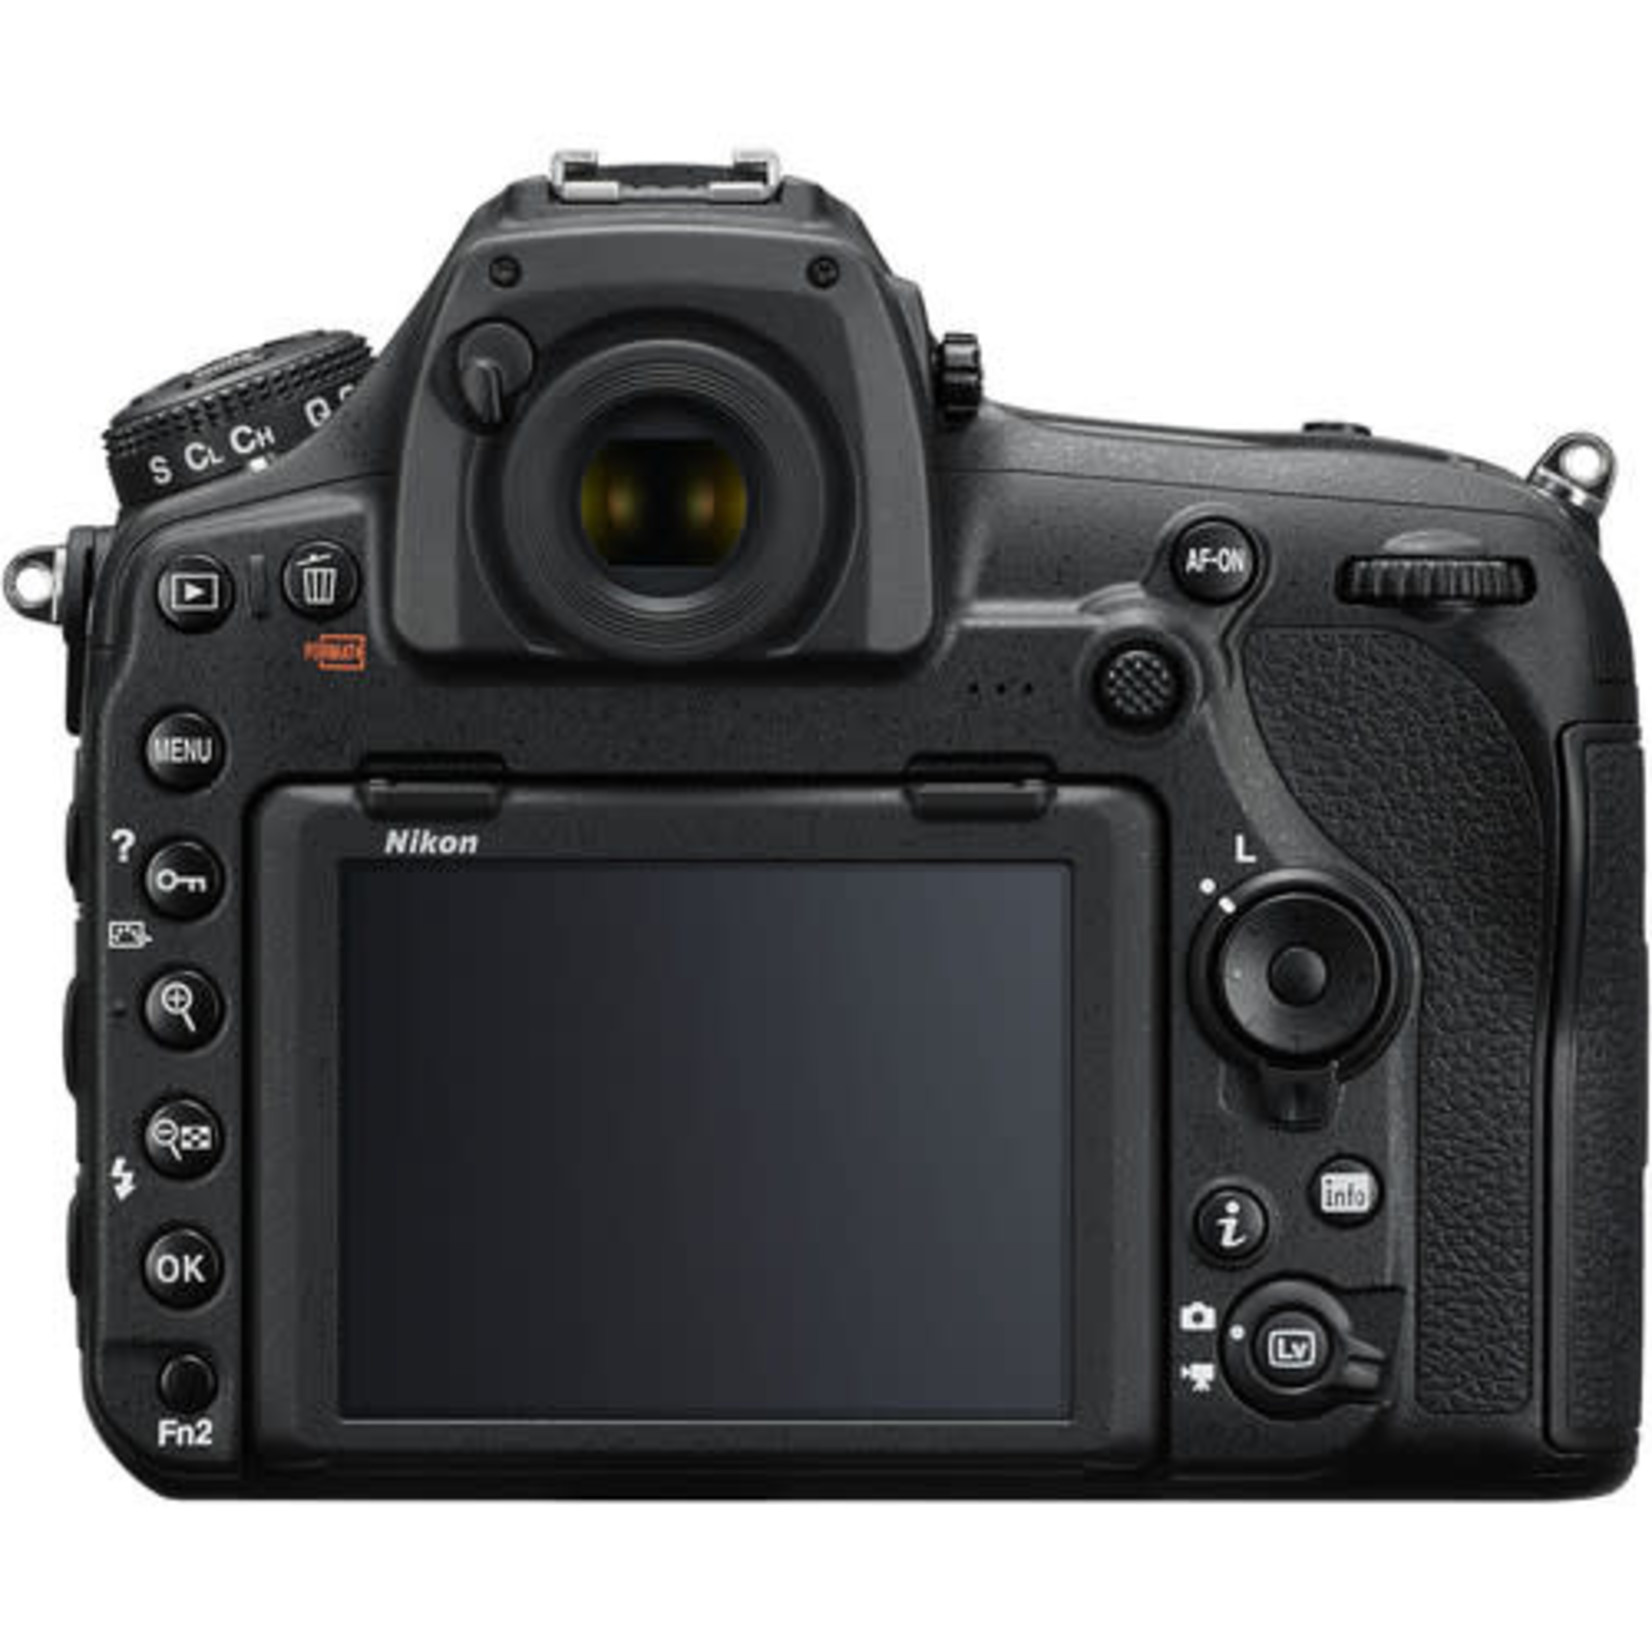 Nikon Nikon D850 DSLR Camera (Body Only)